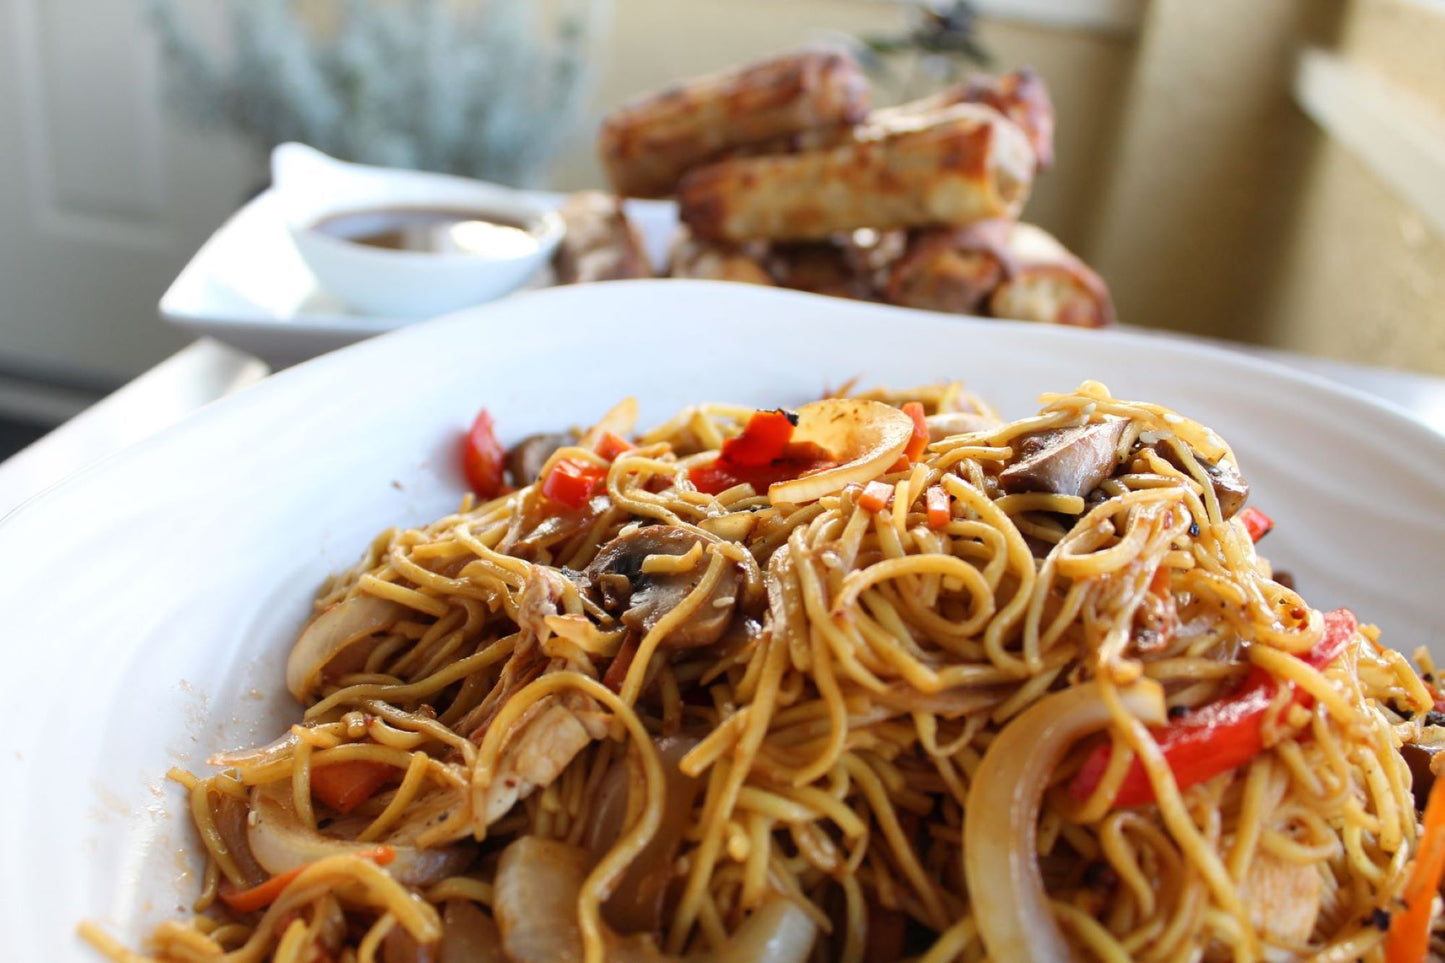 Tues, April 16: Easy Asian Noodles